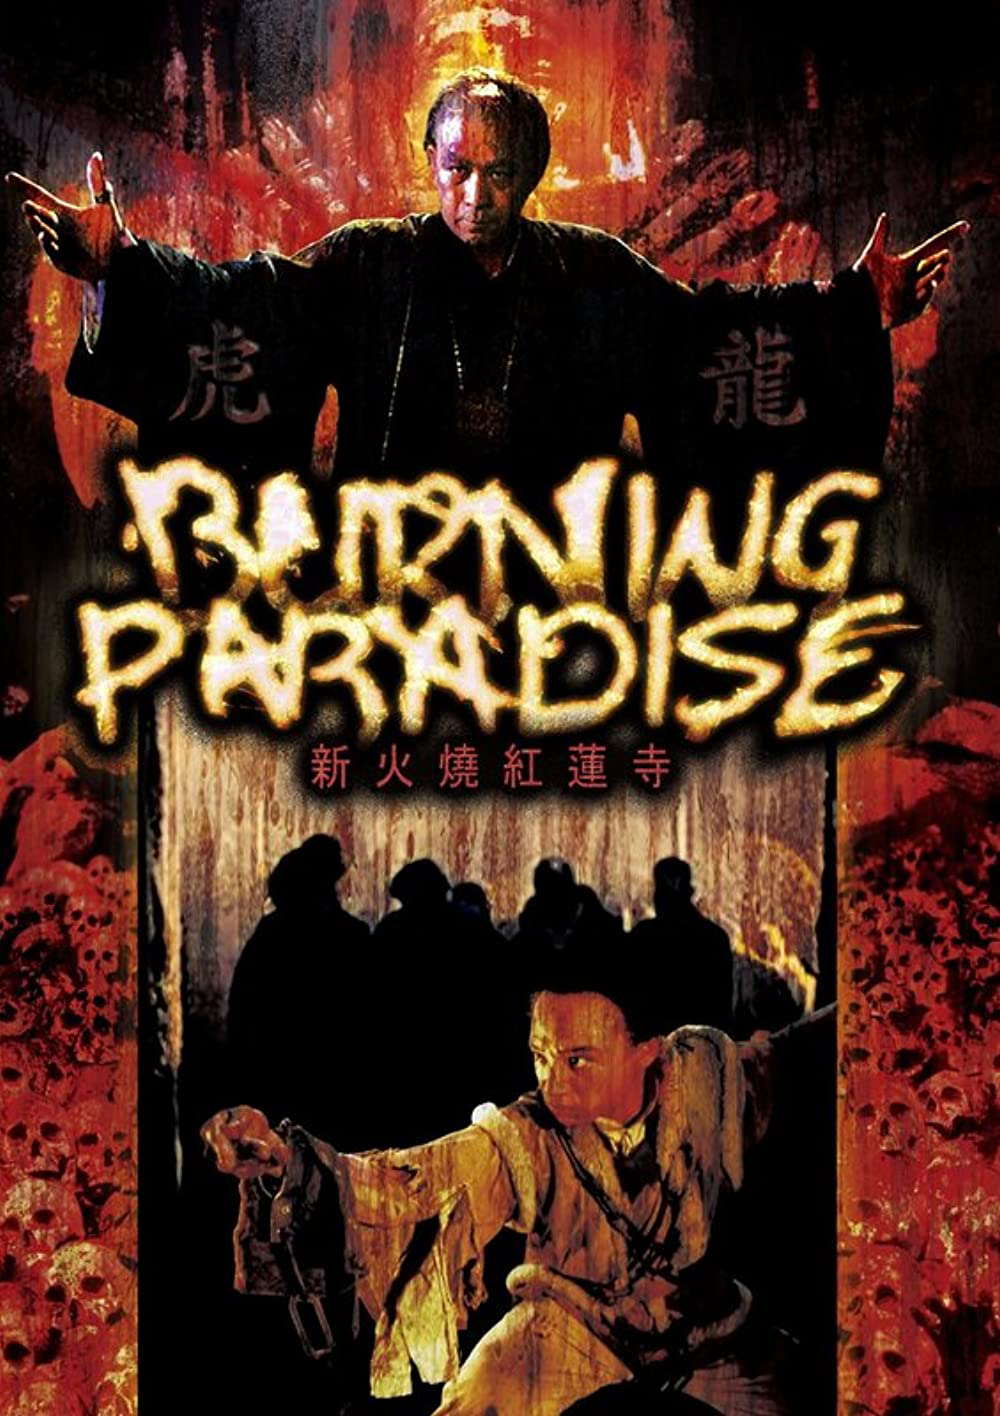 Hỏa Thiêu Hồng Liên Tự (Burning Paradise) [1994]